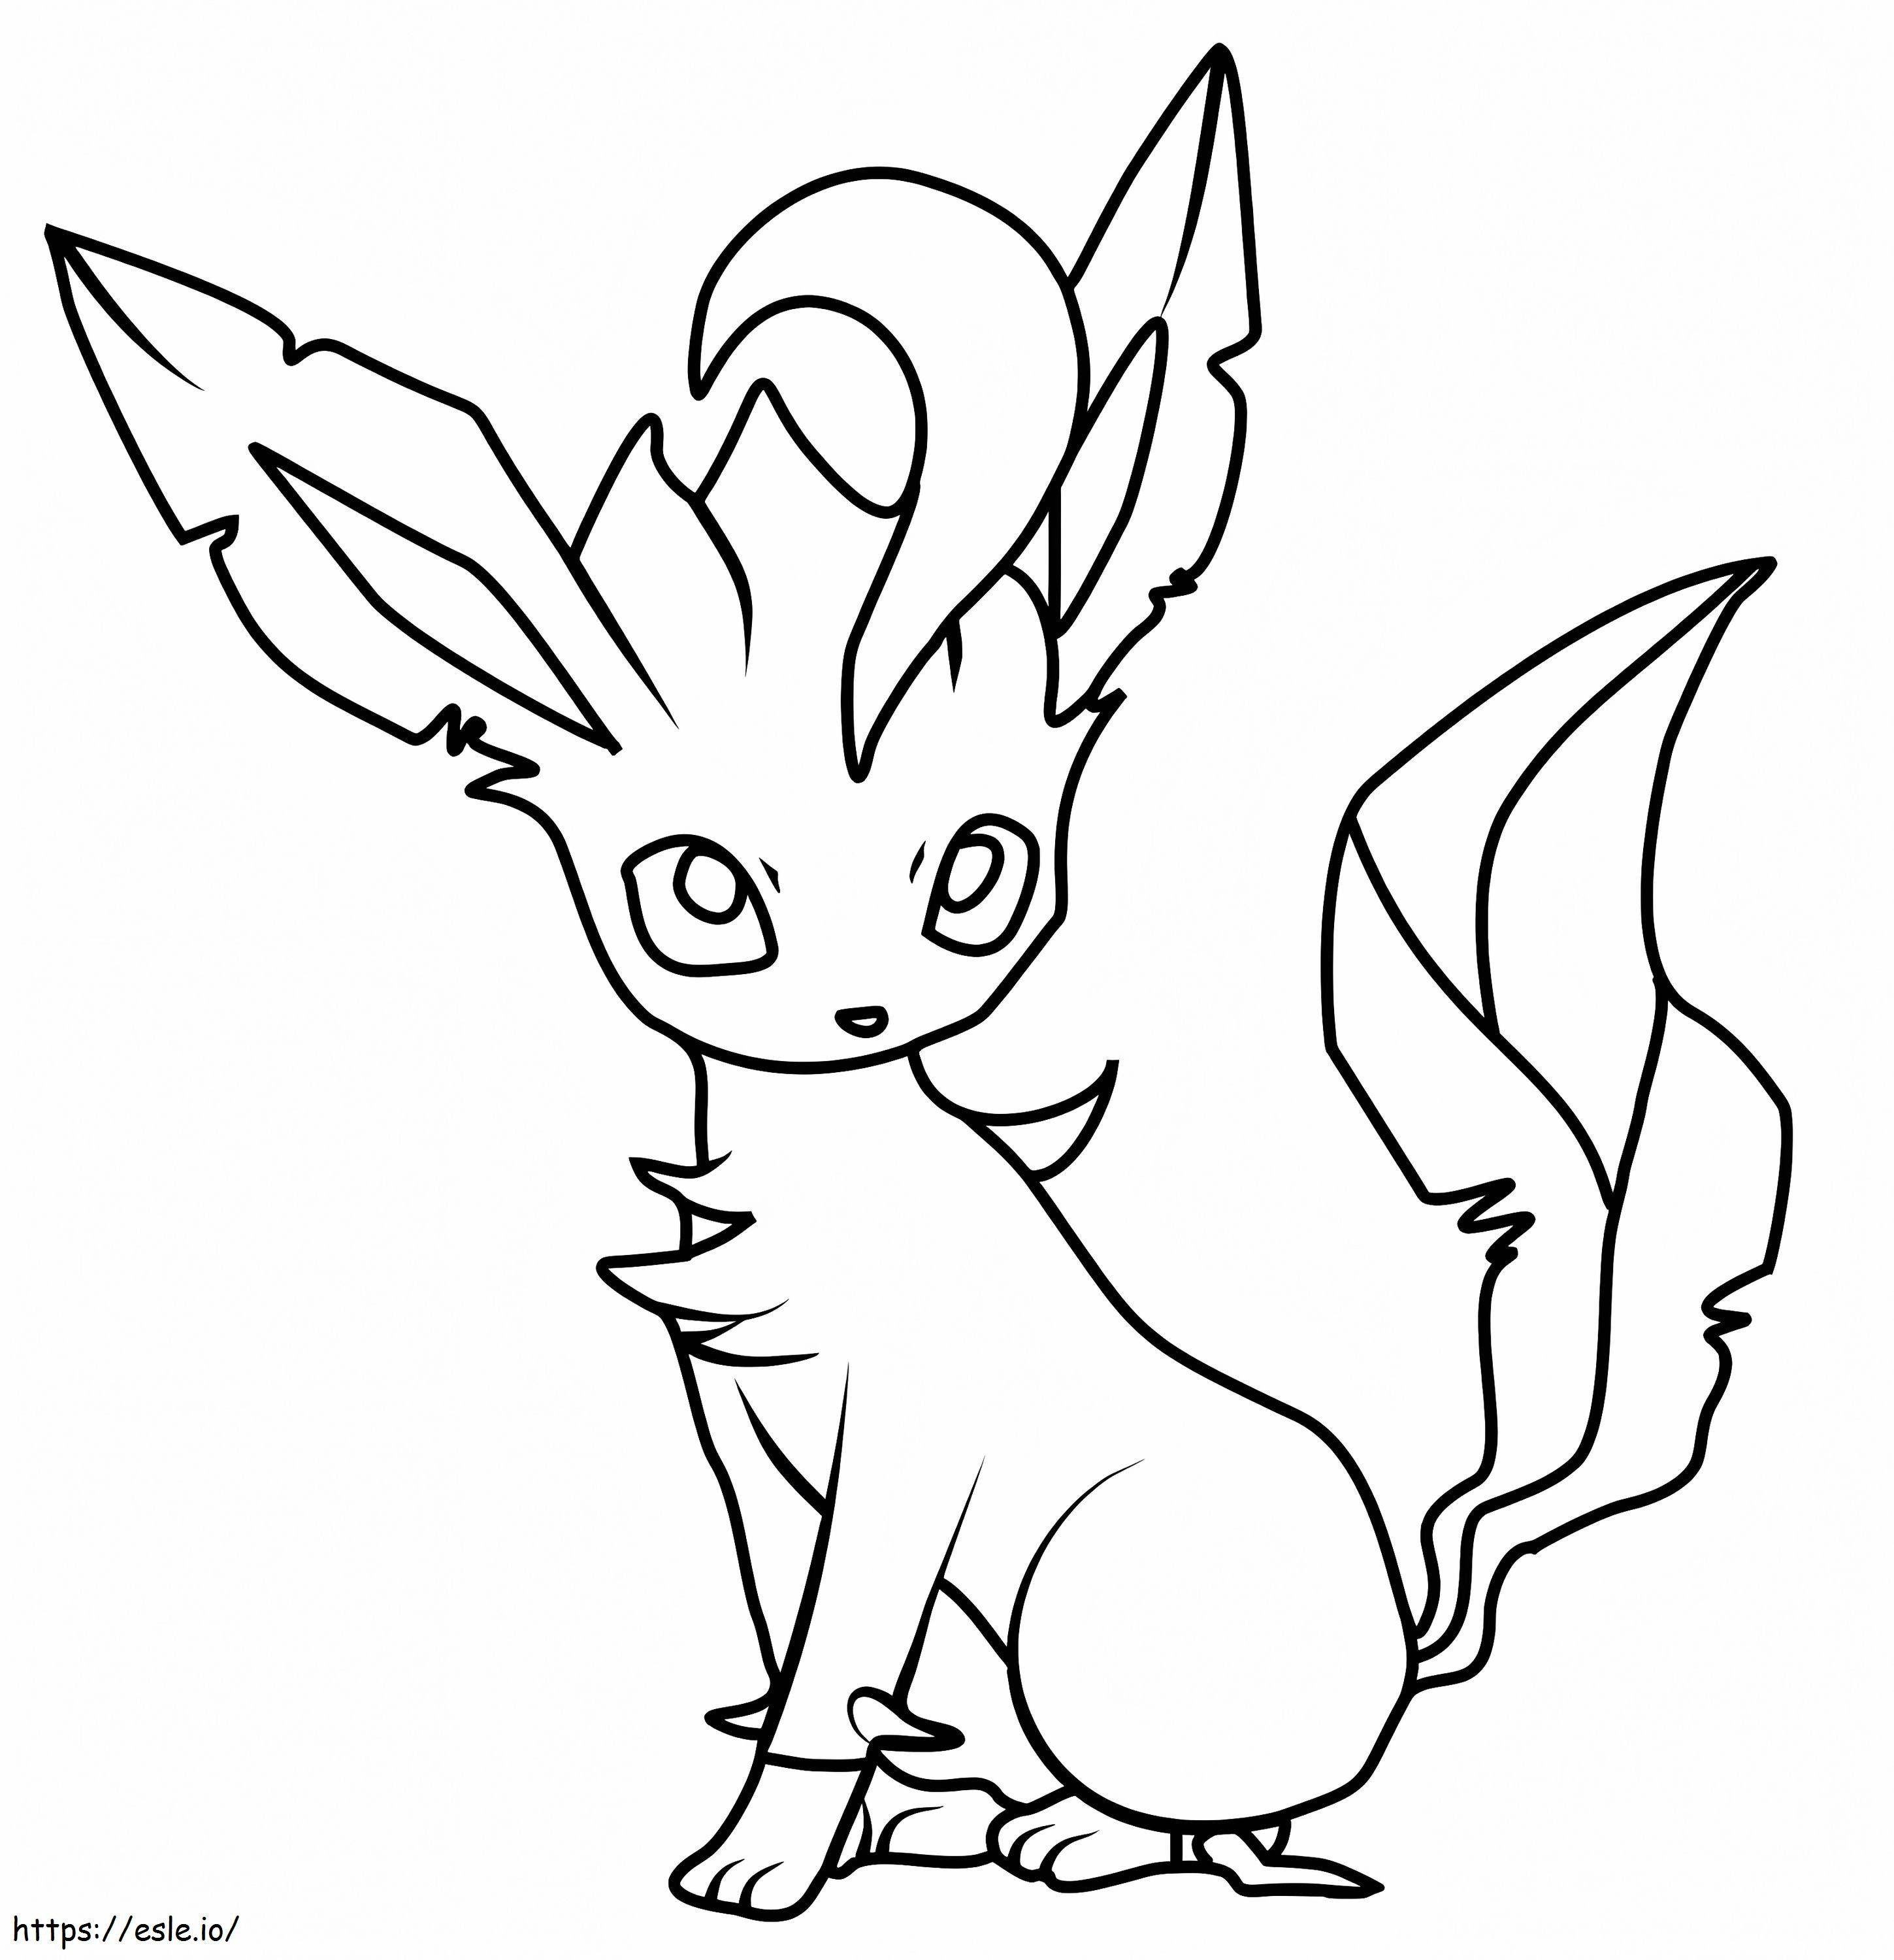 Adorável Pokémon Leafeon para colorir